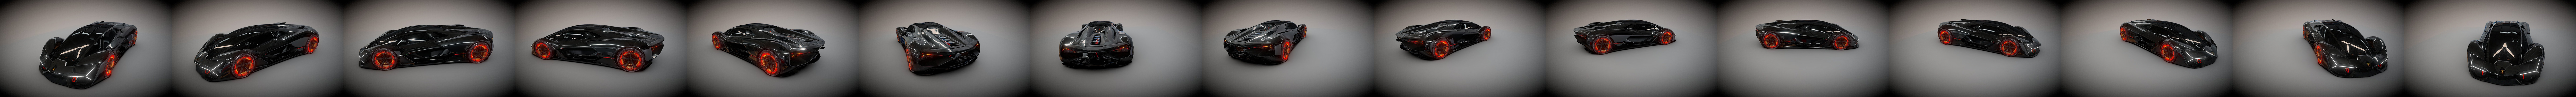 Lamborghini Terzo Millennio 2018 - 3D Model by SQUIR